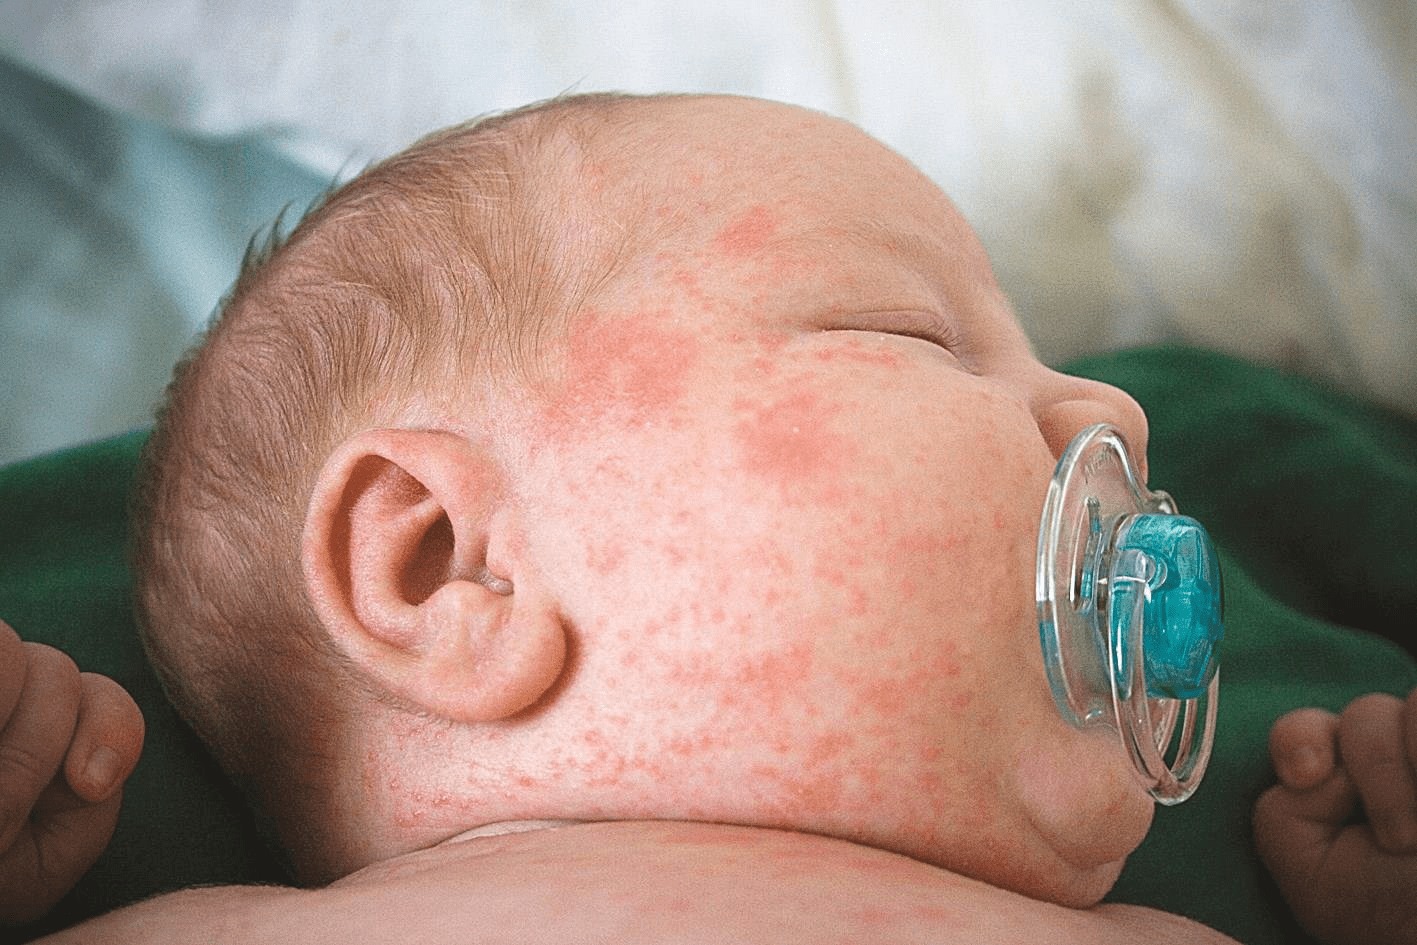  Bệnh sởi thường xảy ra ở những bé có hệ miễn dịch kém